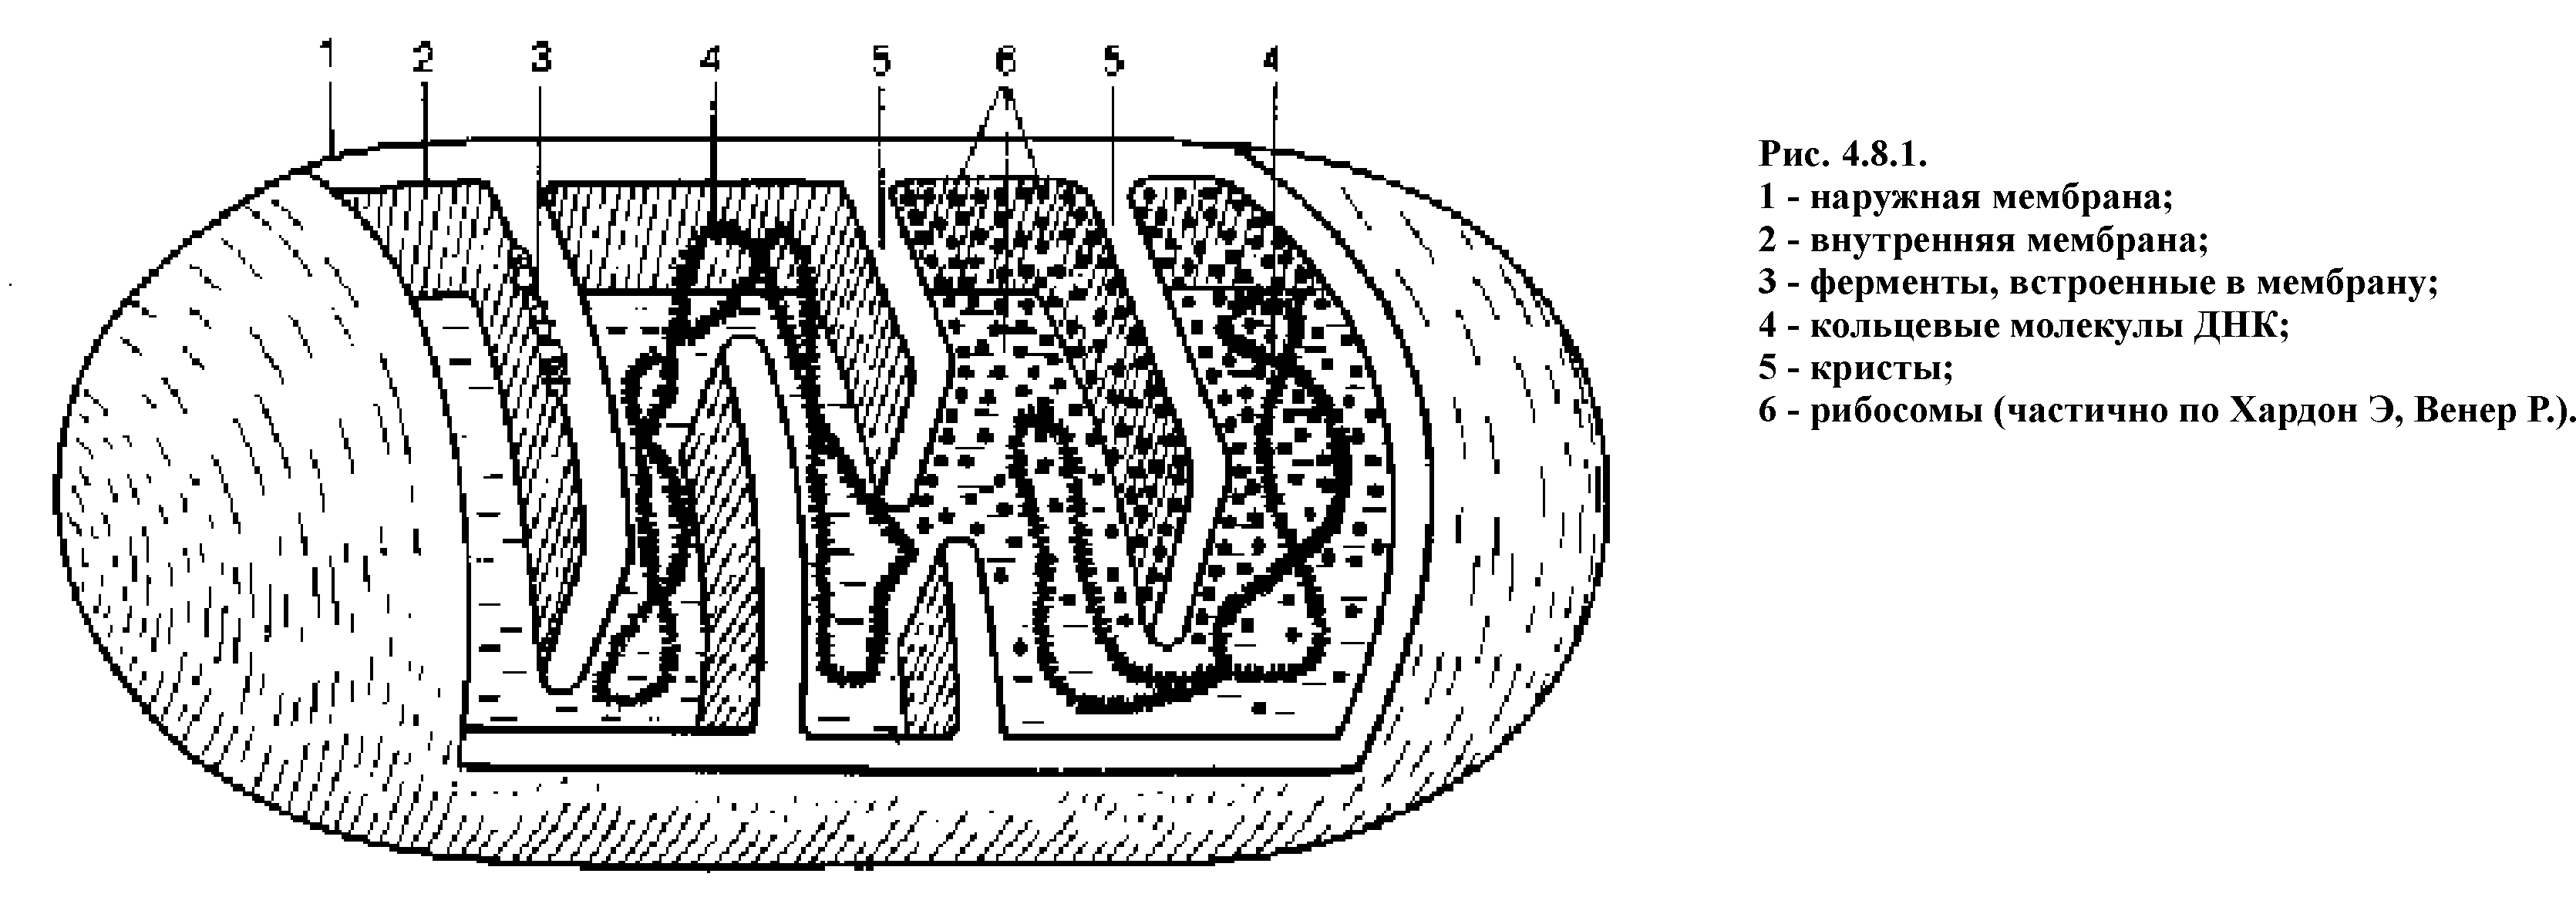 Схематическое изображение митохондрии